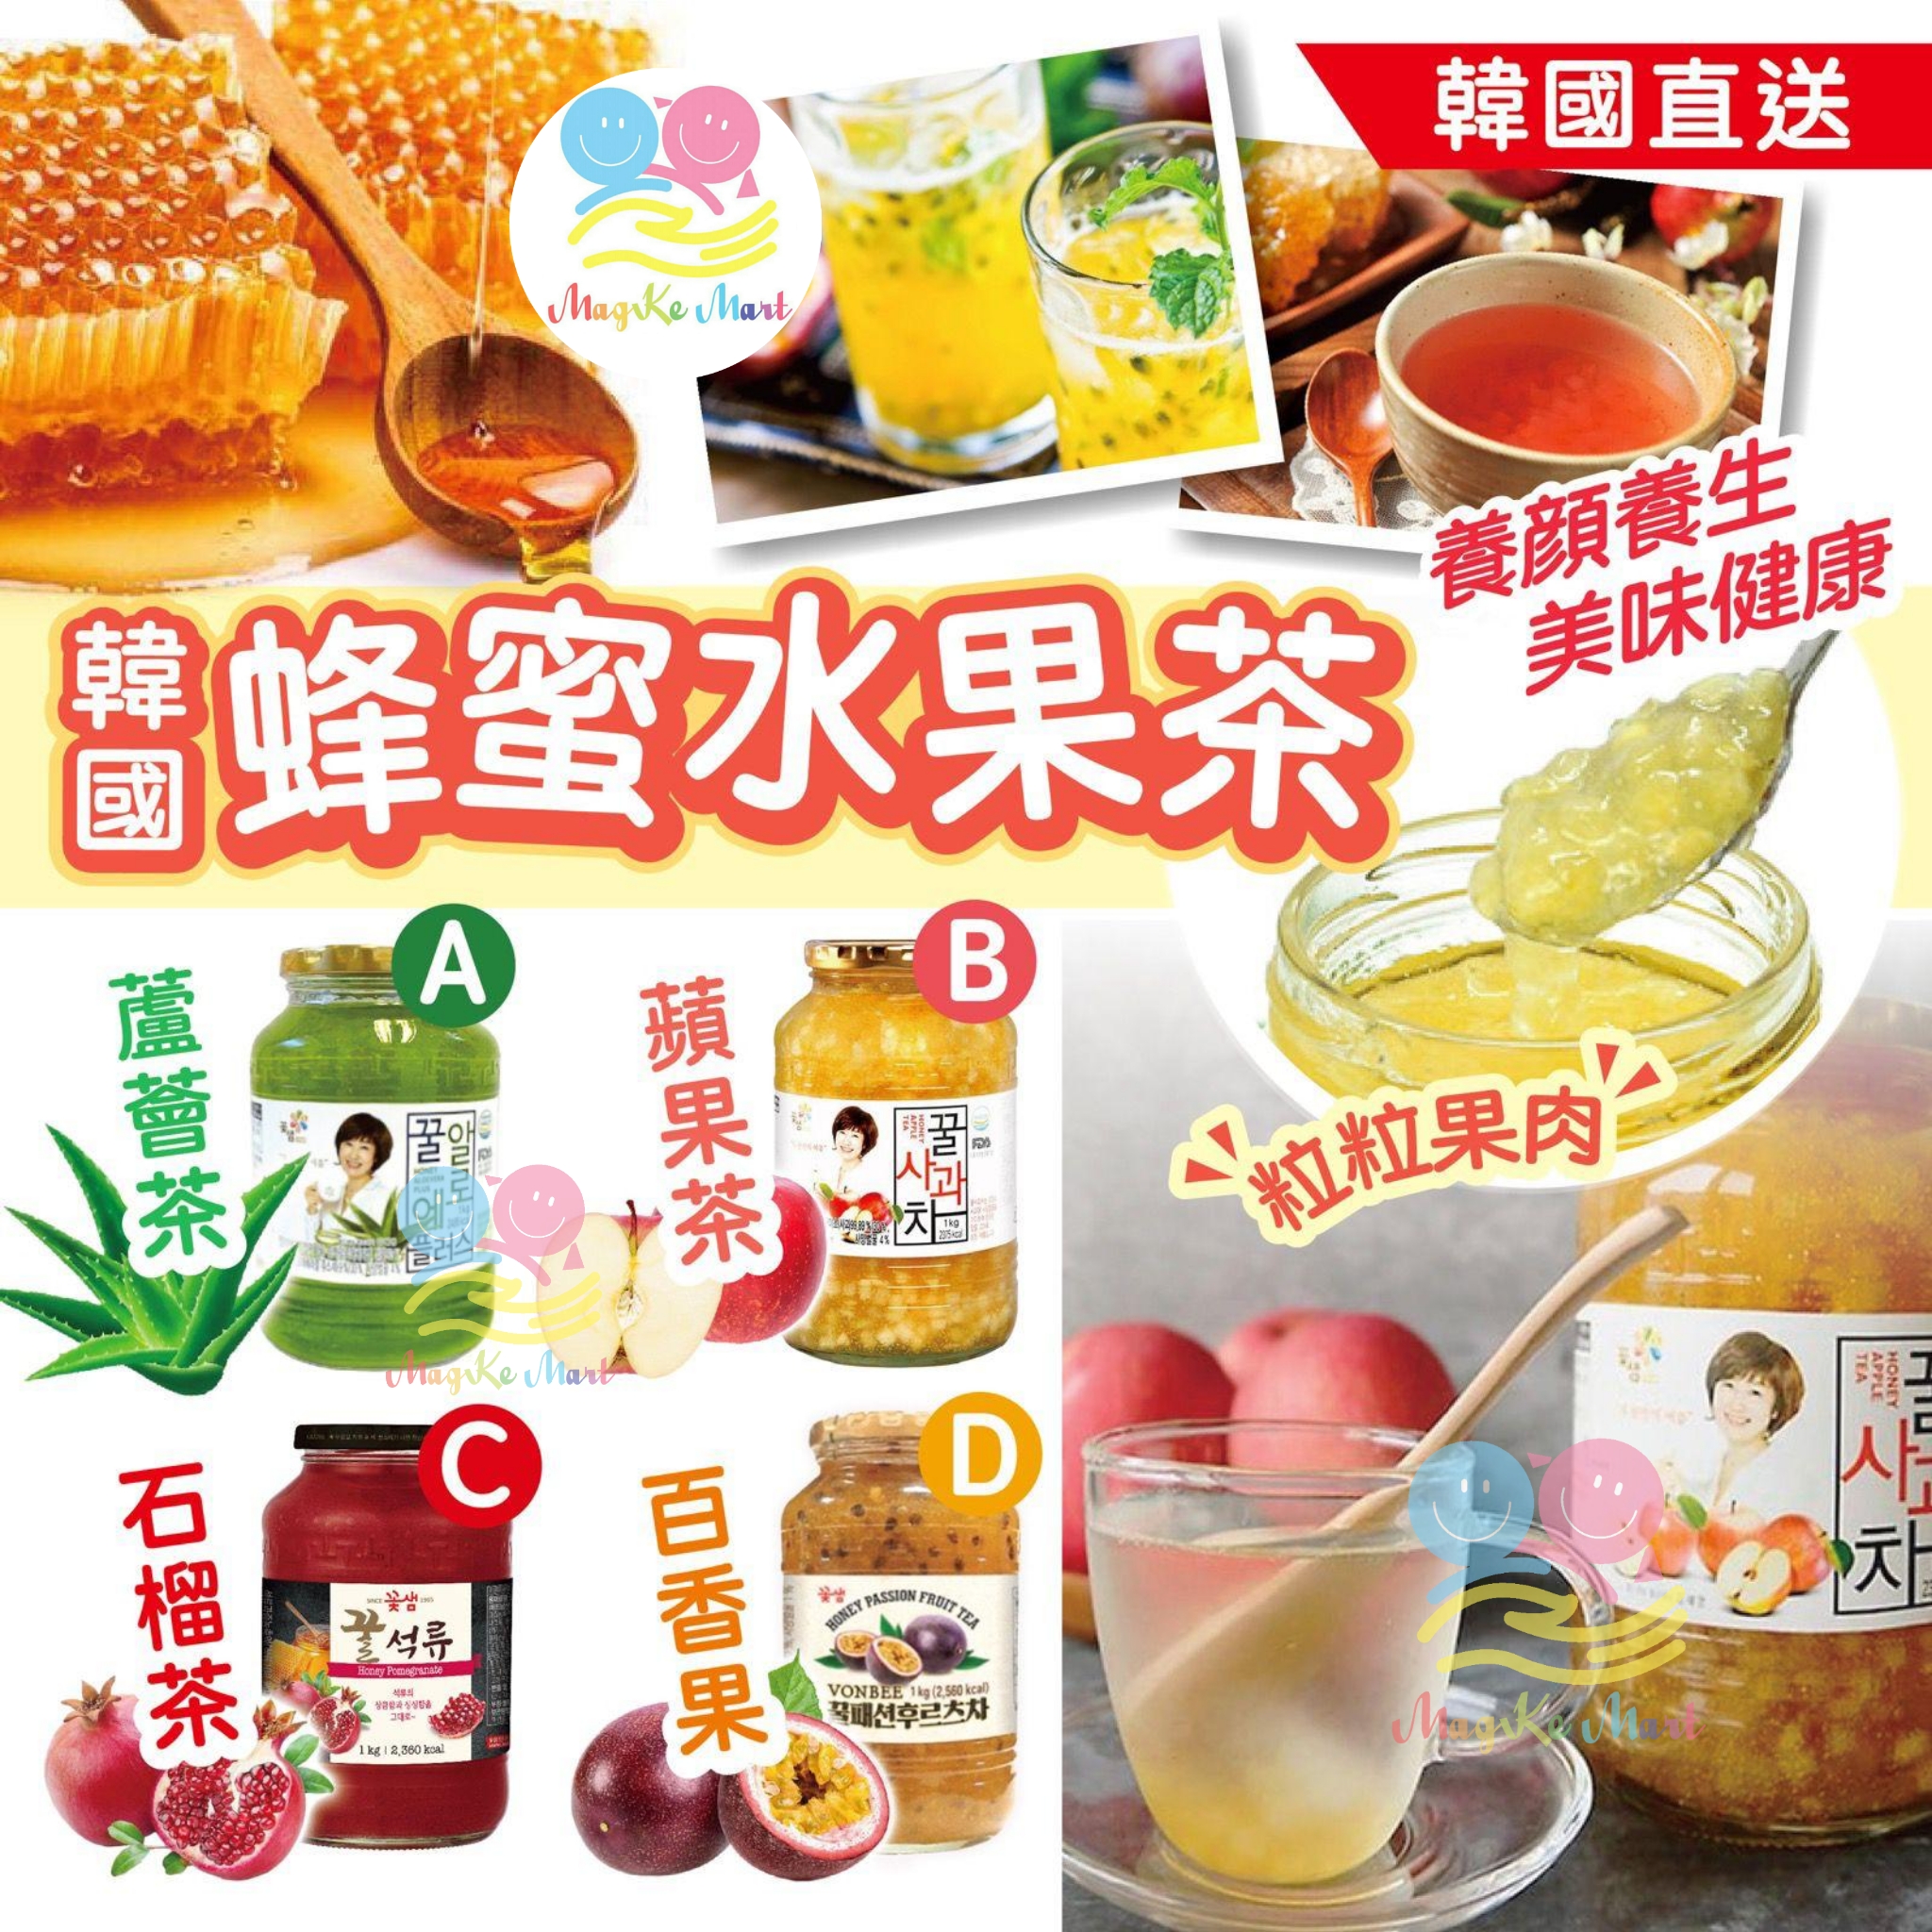 韓國蜂蜜水果茶系列 1kg (D) 百香果蜂蜜